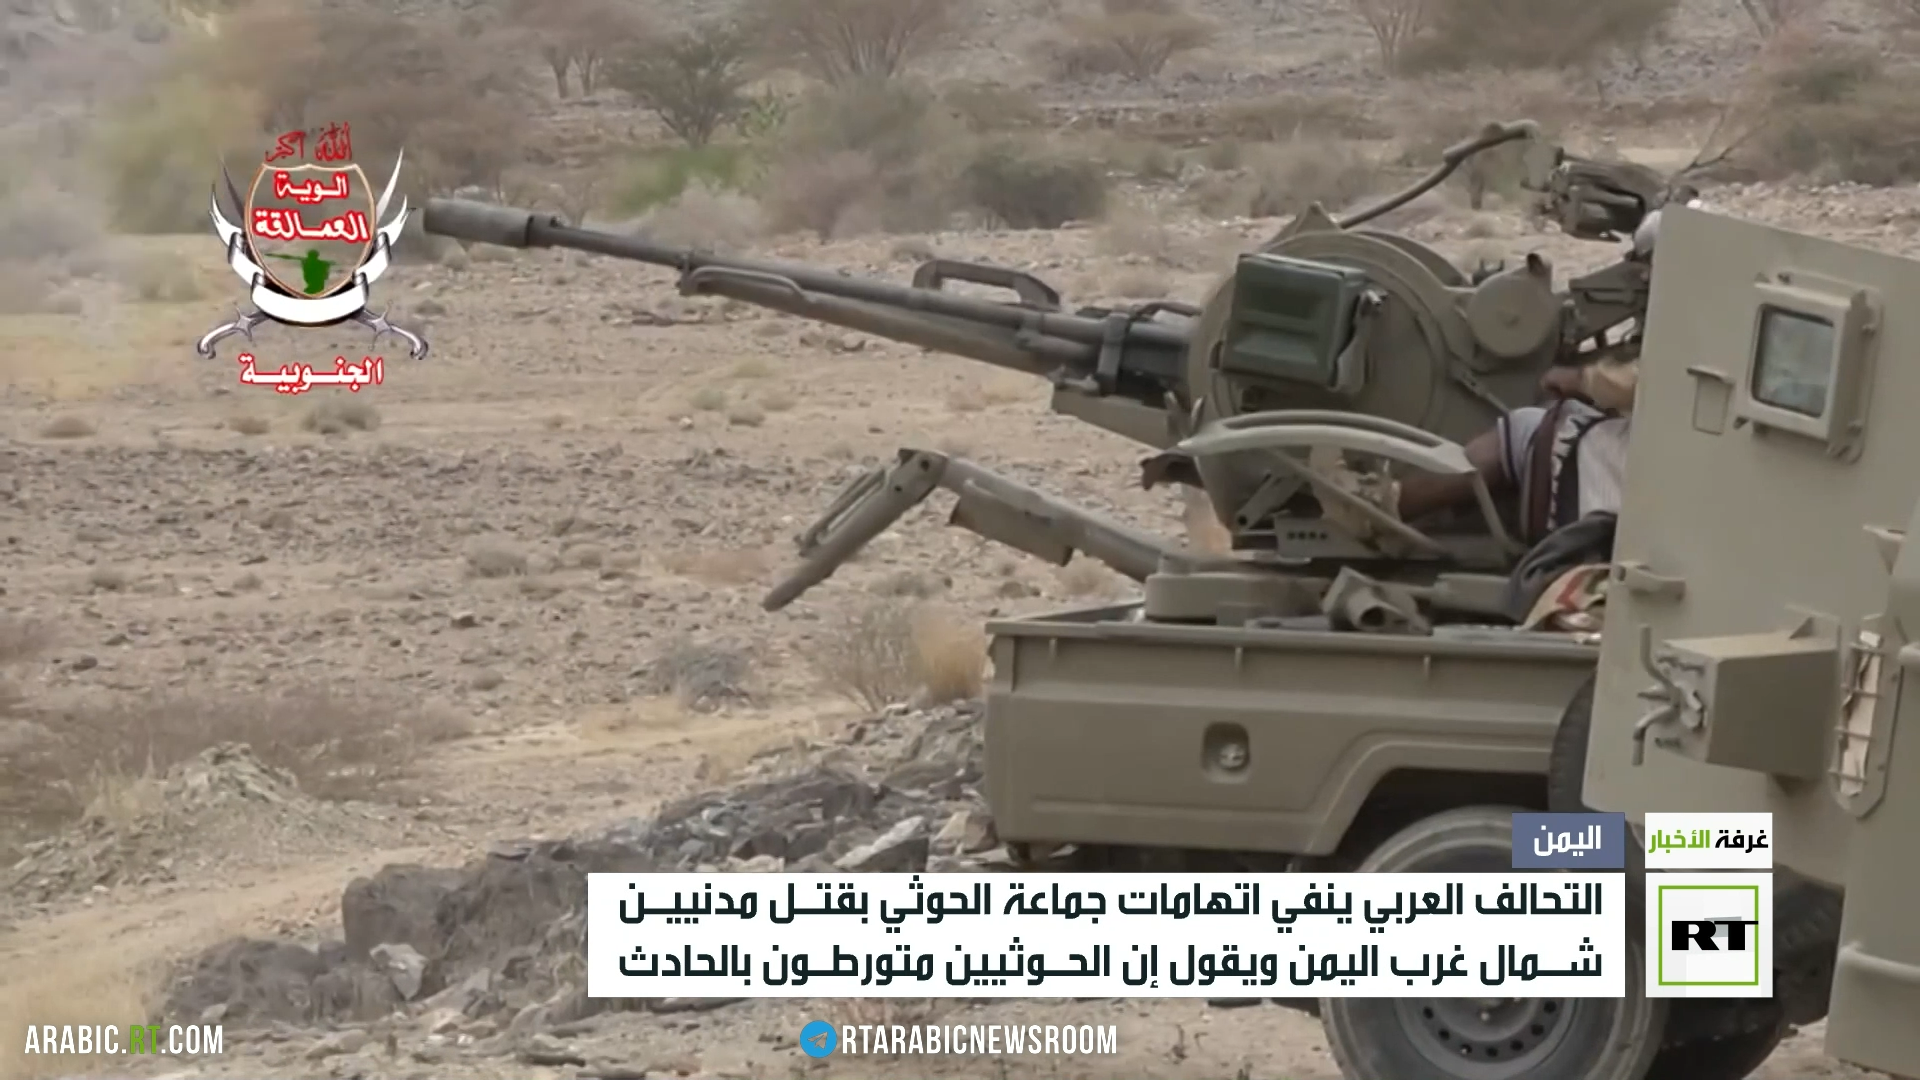 التحالف ينفي اتهامات الحوثي بقتل مدنيين شمال غرب اليمن